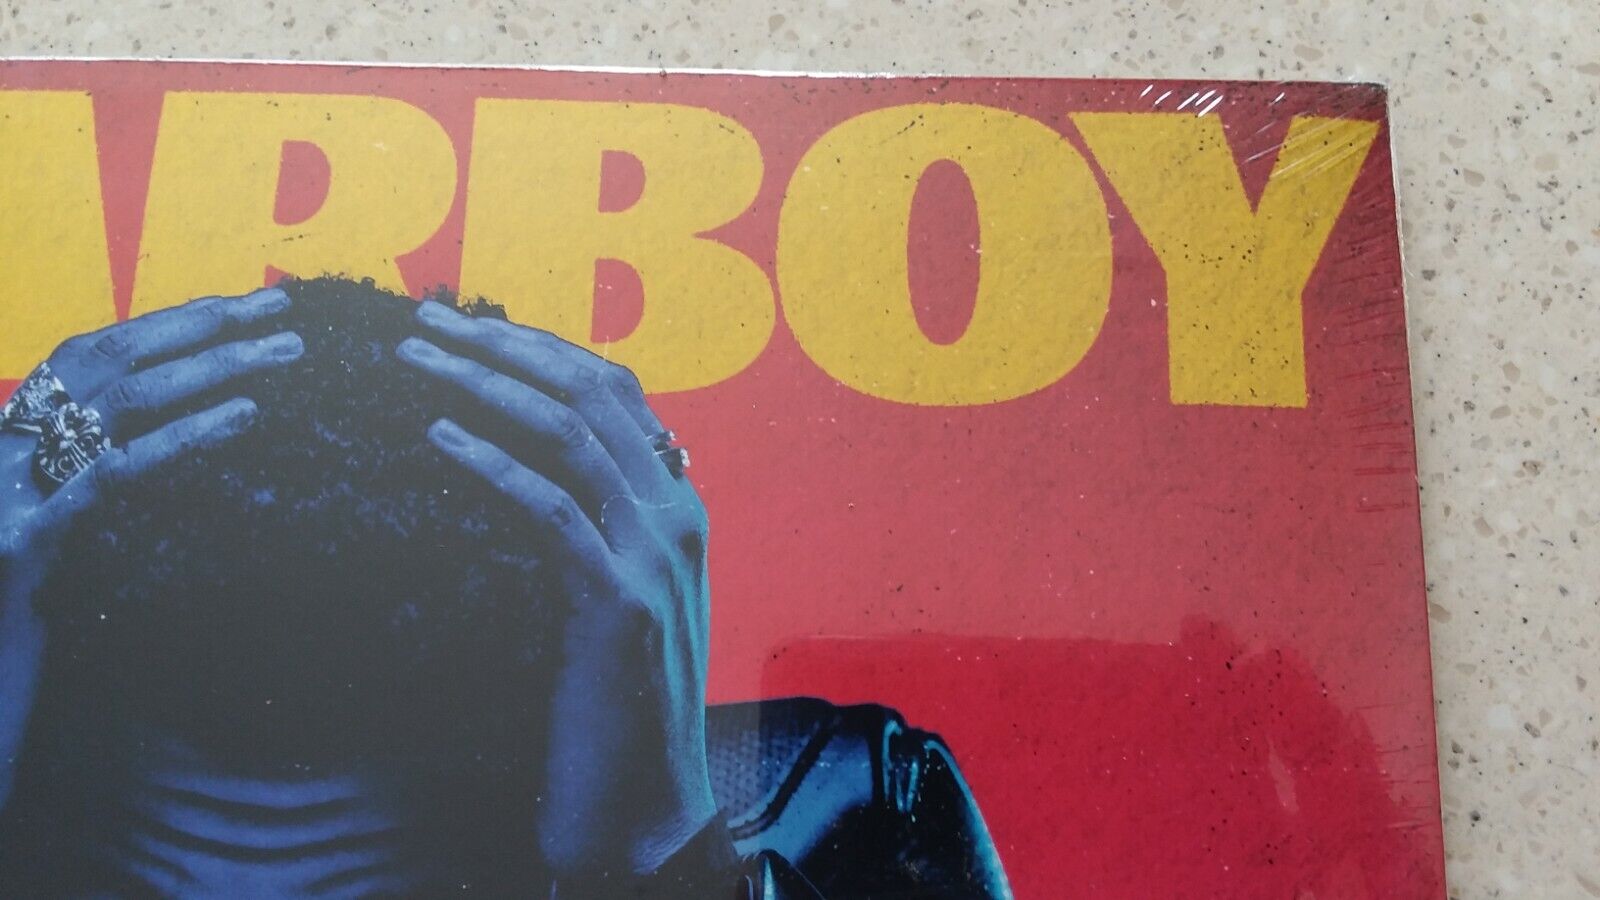  Starboy [2 LP]: CDs & Vinyl